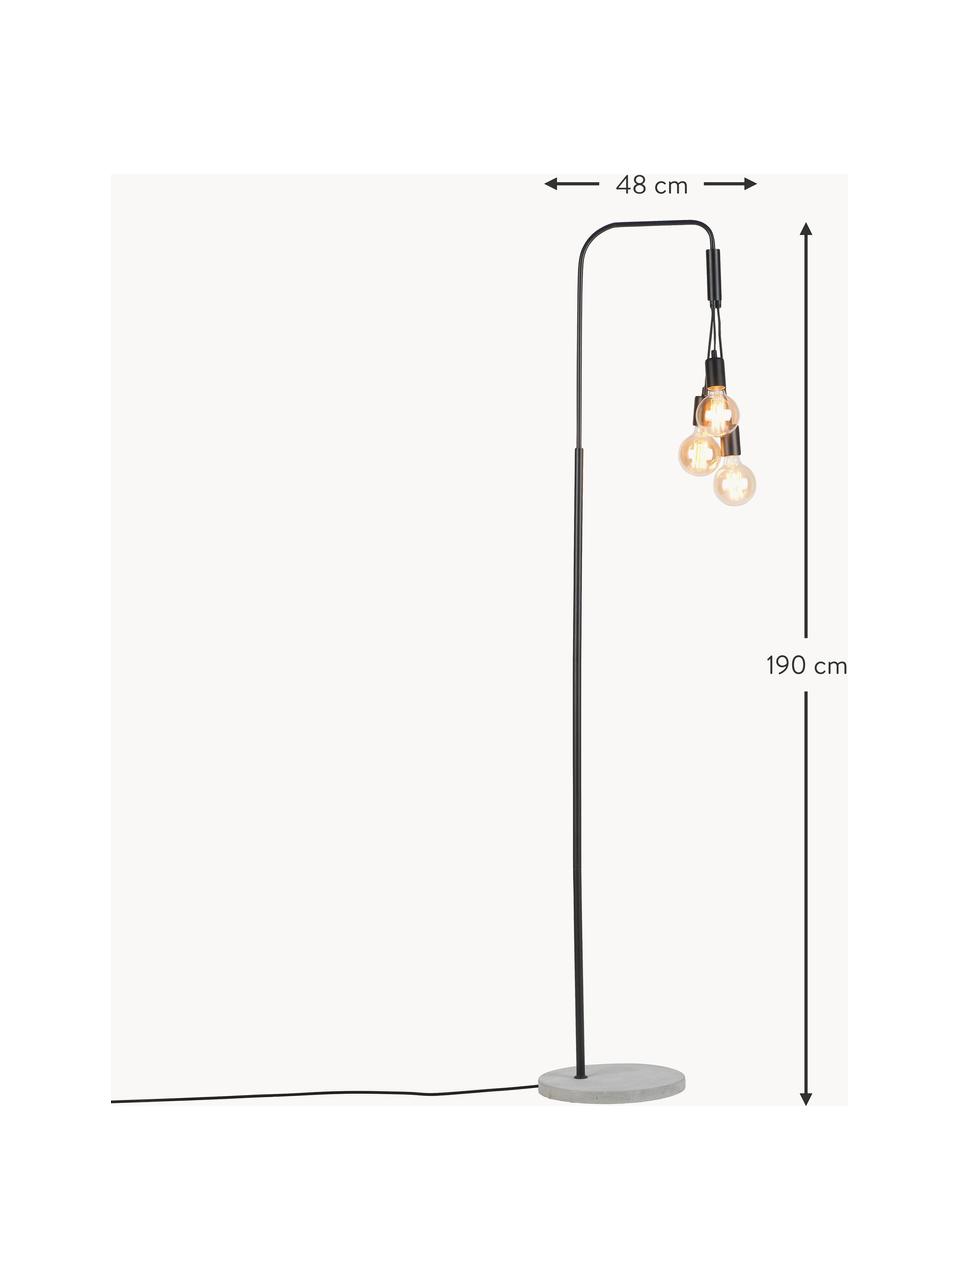 Grand lampadaire avec pied en béton Oslo, Noir, gris, haut. 190 cm